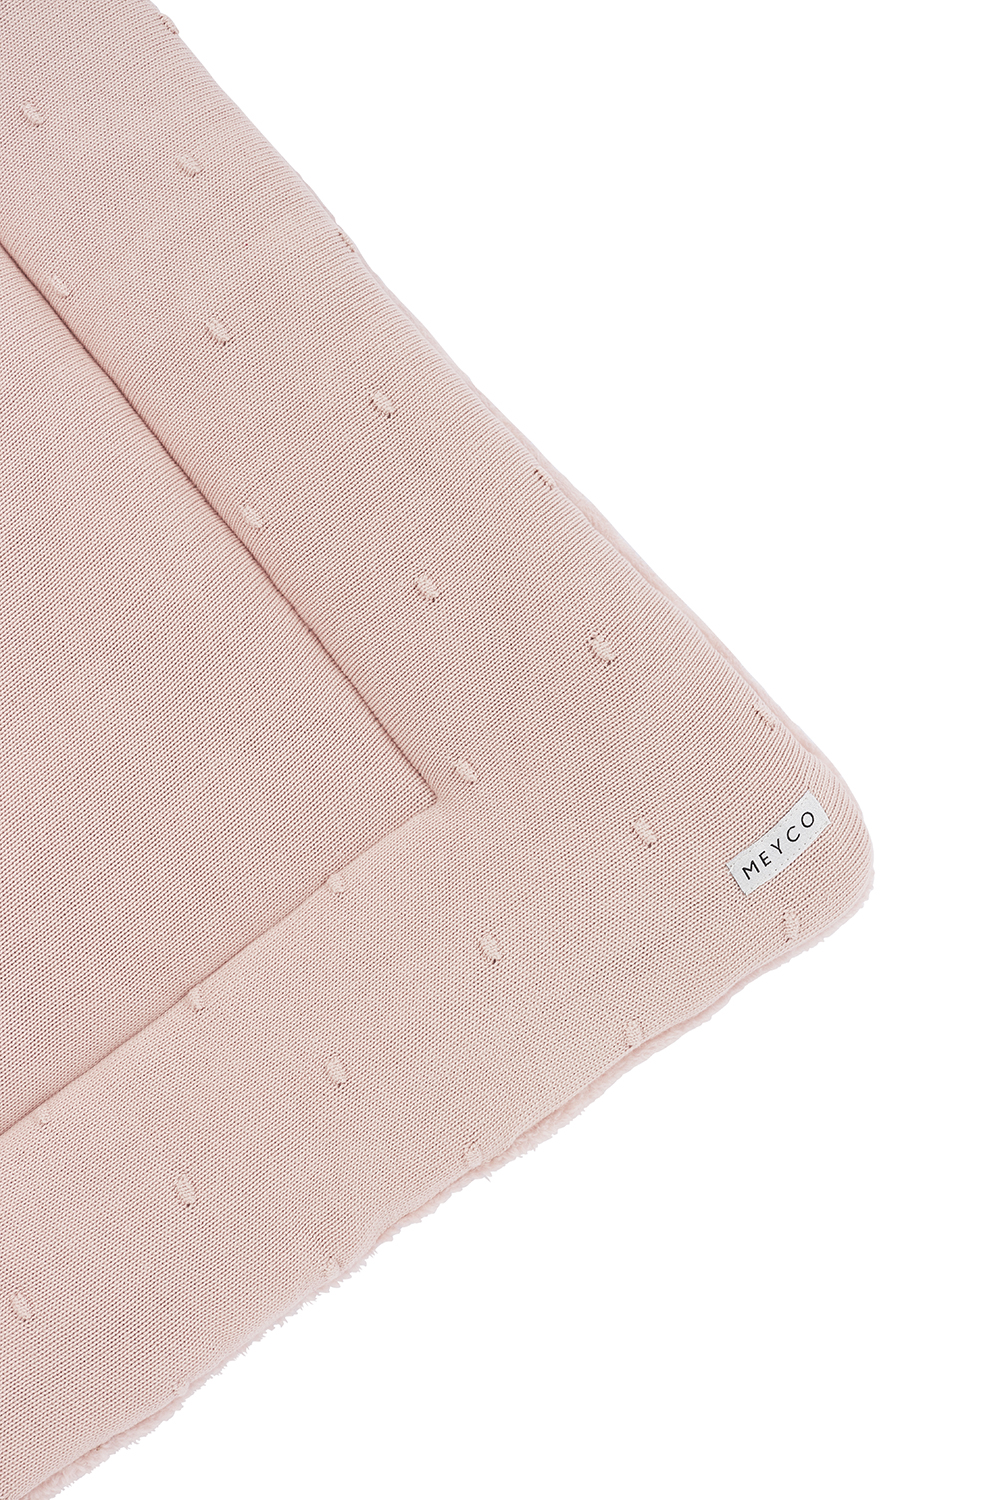 Boxkleed Mini Knots - Soft Pink - 77x97cm